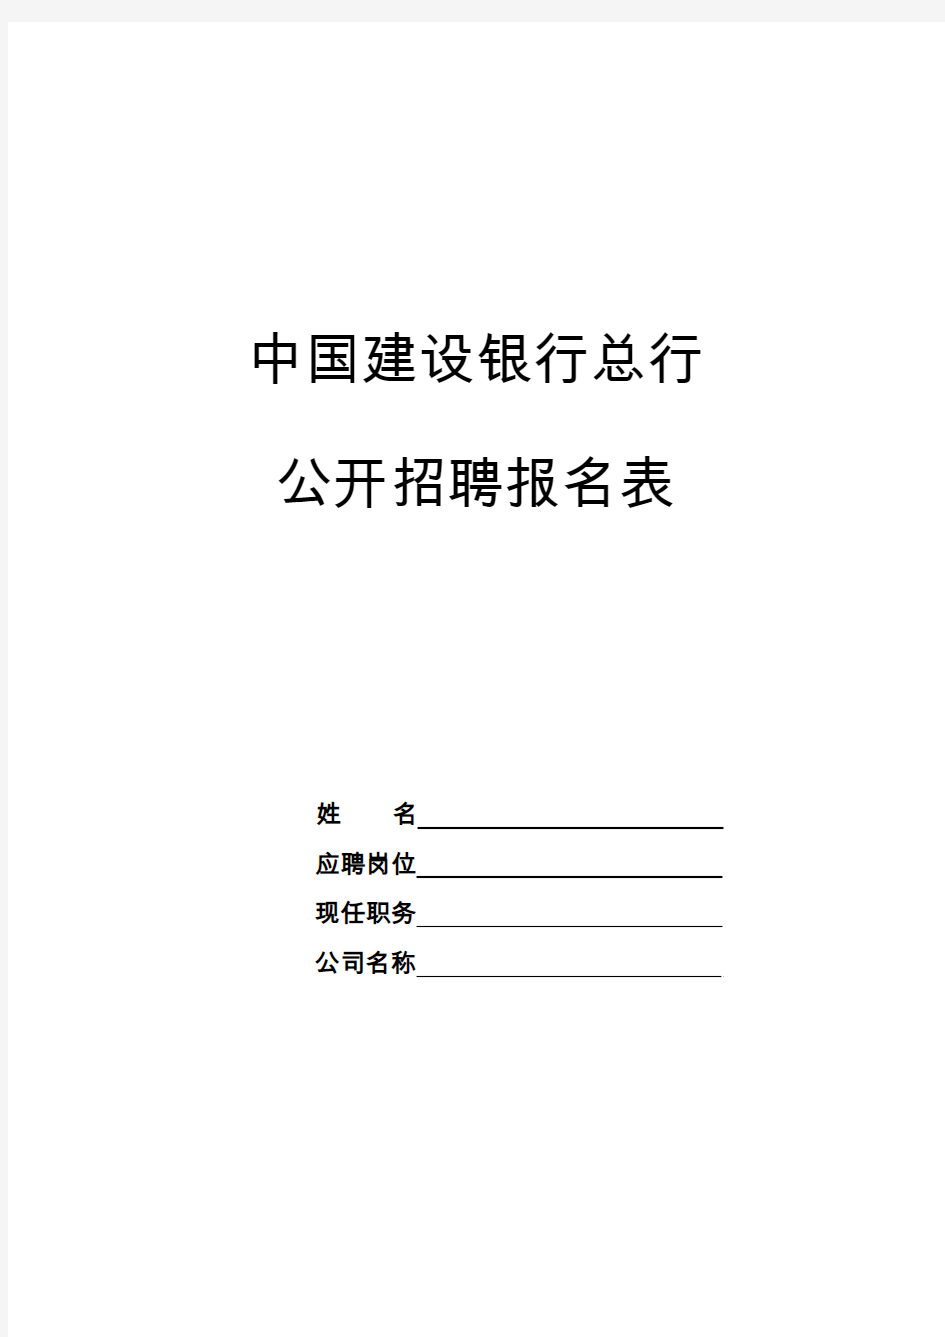 中国建设银行公开招聘报名表(信息技术研发岗,非中国大陆公民)